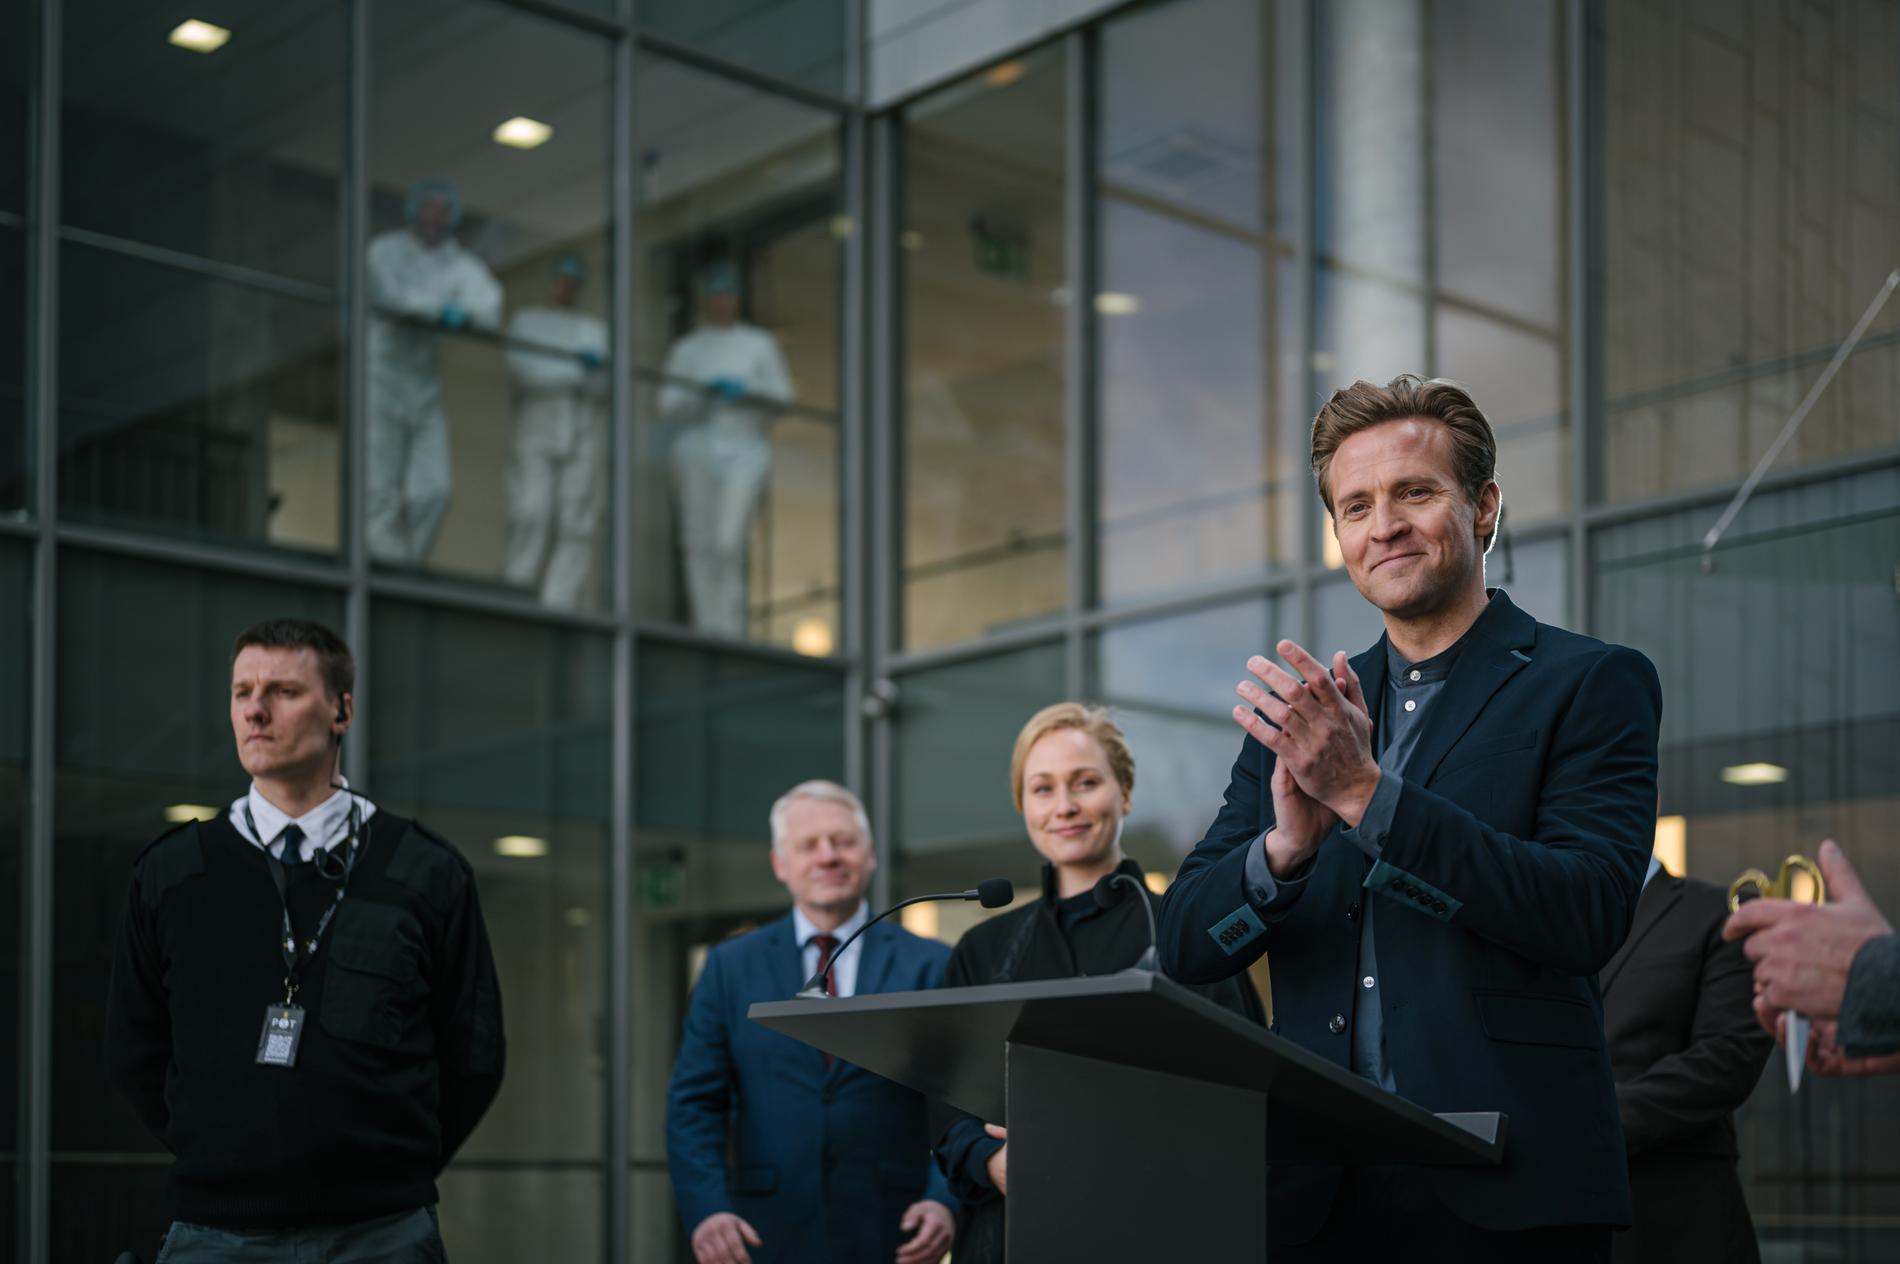 Une série télévisée norvégienne remporte un prix prestigieux – VG